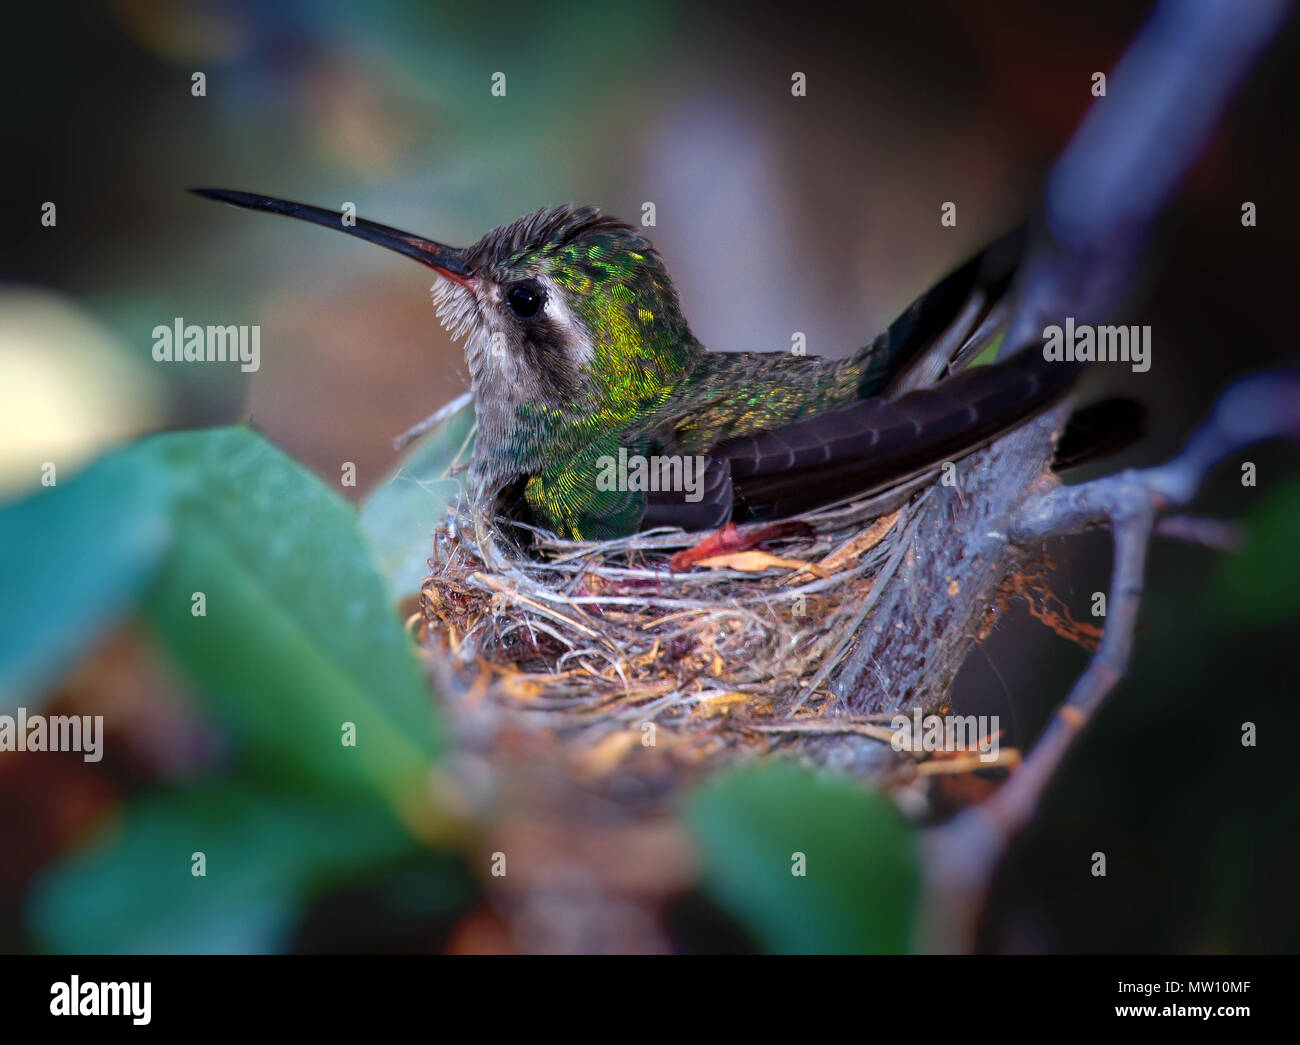 Nesting Female Hummingbird Stock Photo